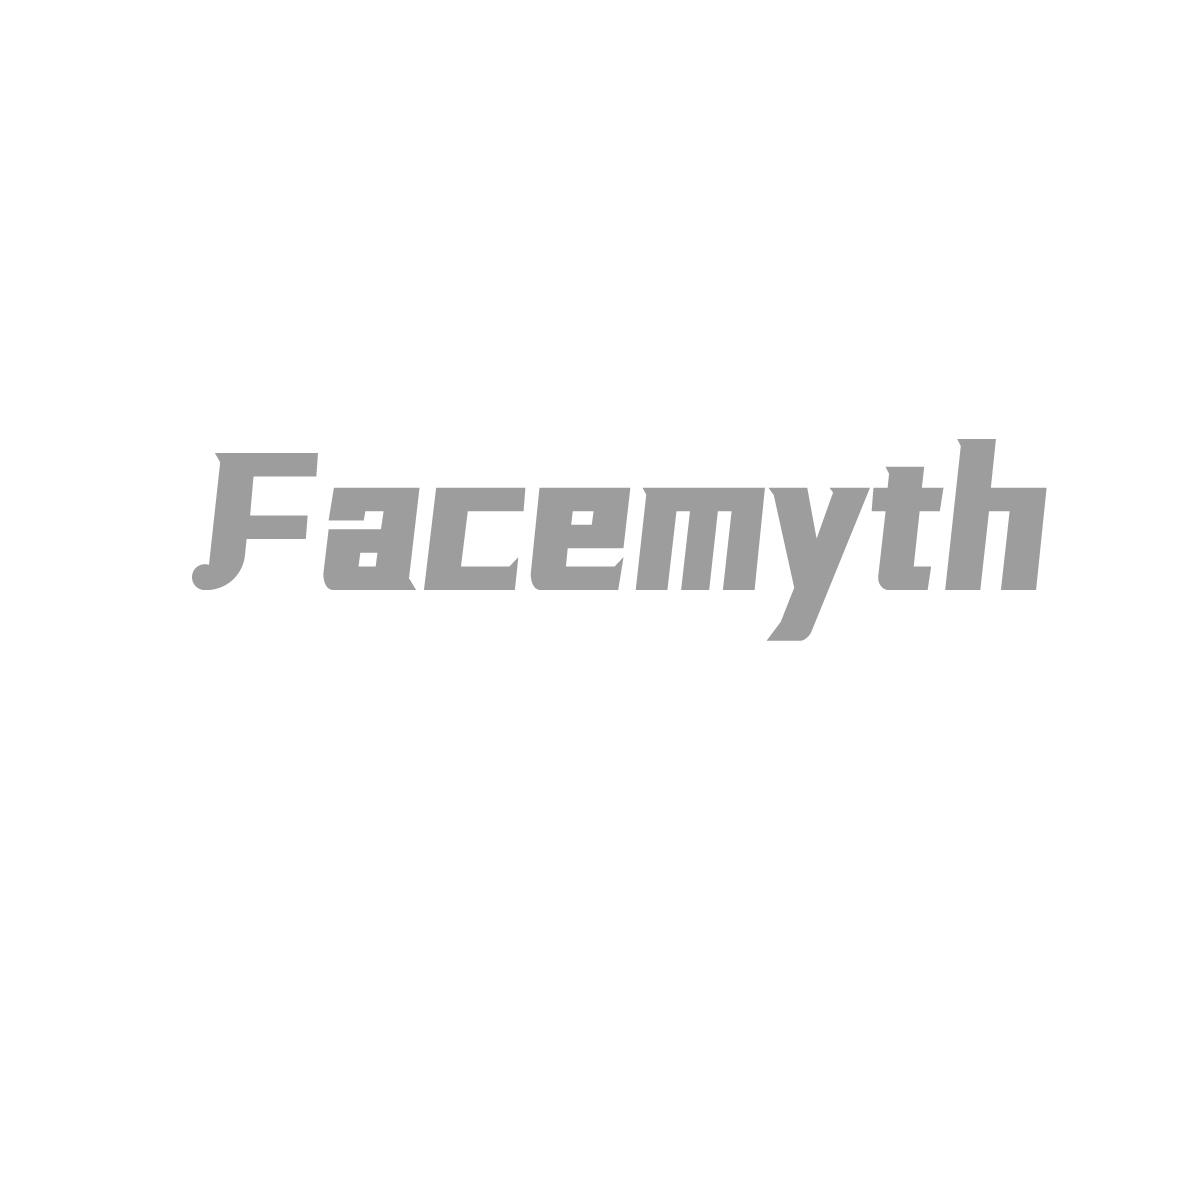 FACEMYTH